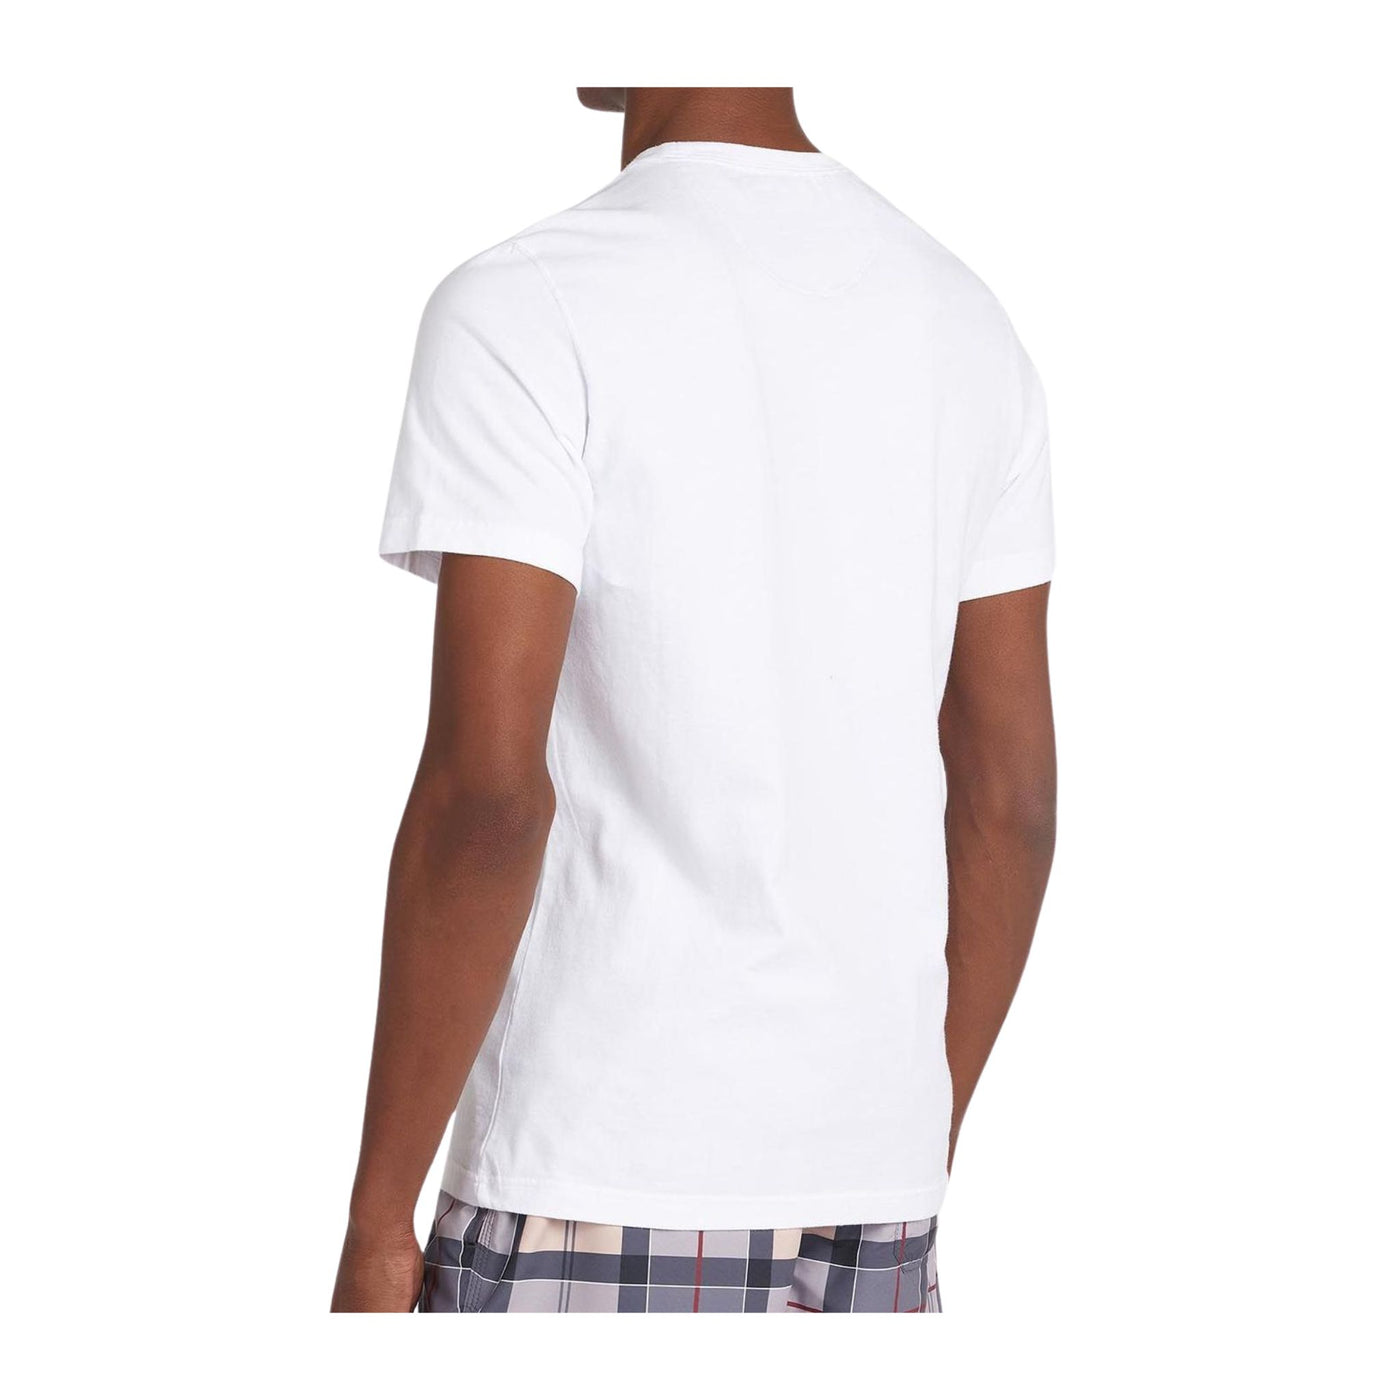 T-shirt Uomo Bianca in cotone con logo ricamato sul petto 